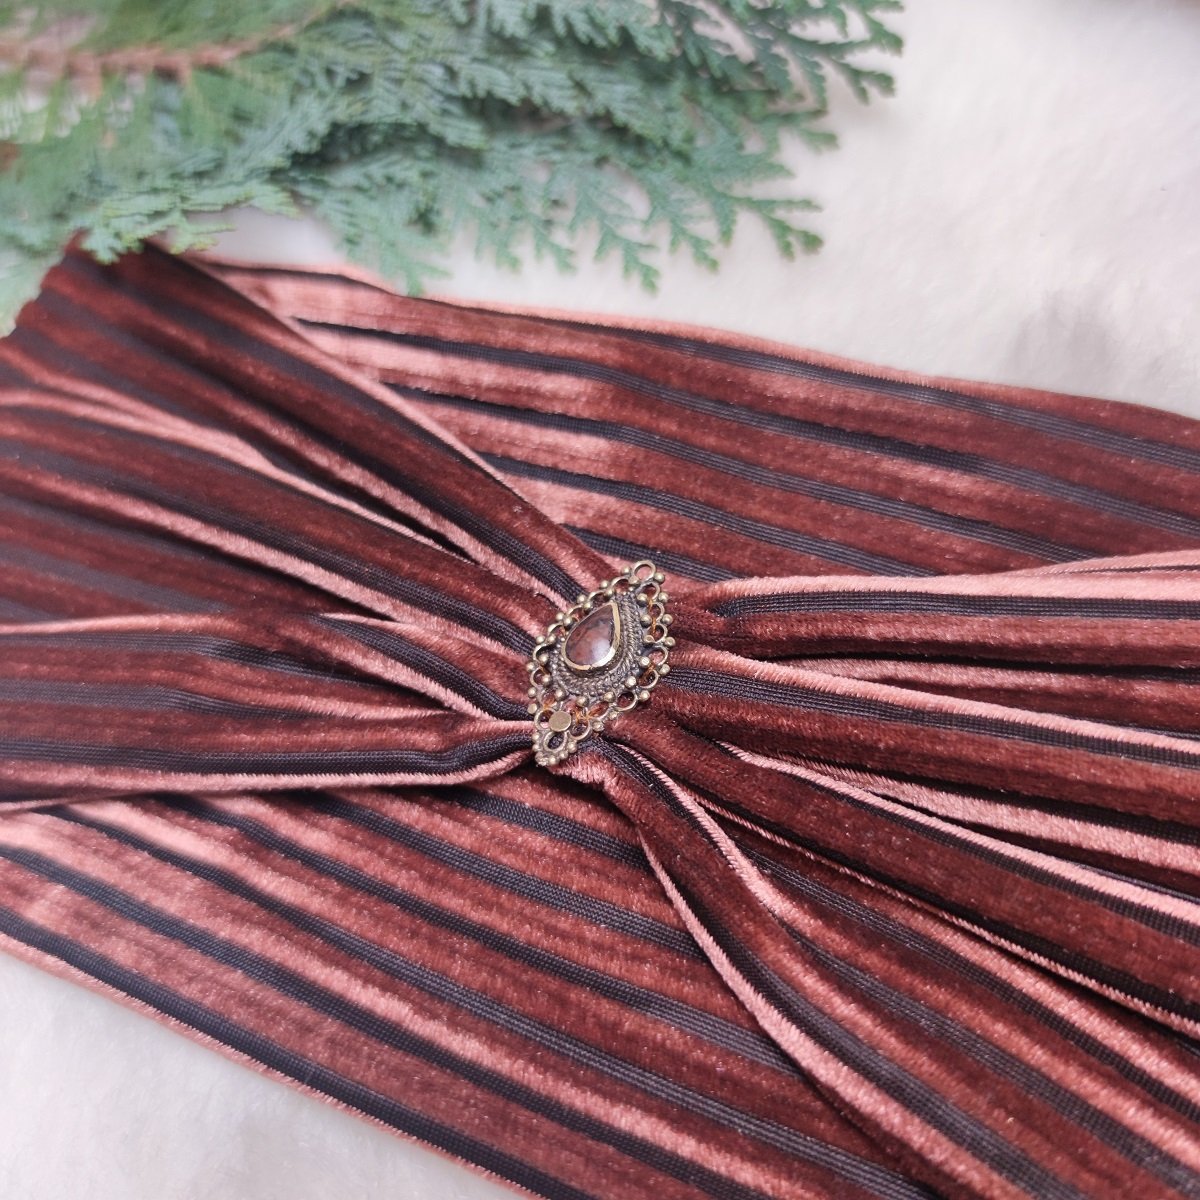 Deri Edelstein Haarband aus Samt - in Bronze Braun mit schwarzen Streifen